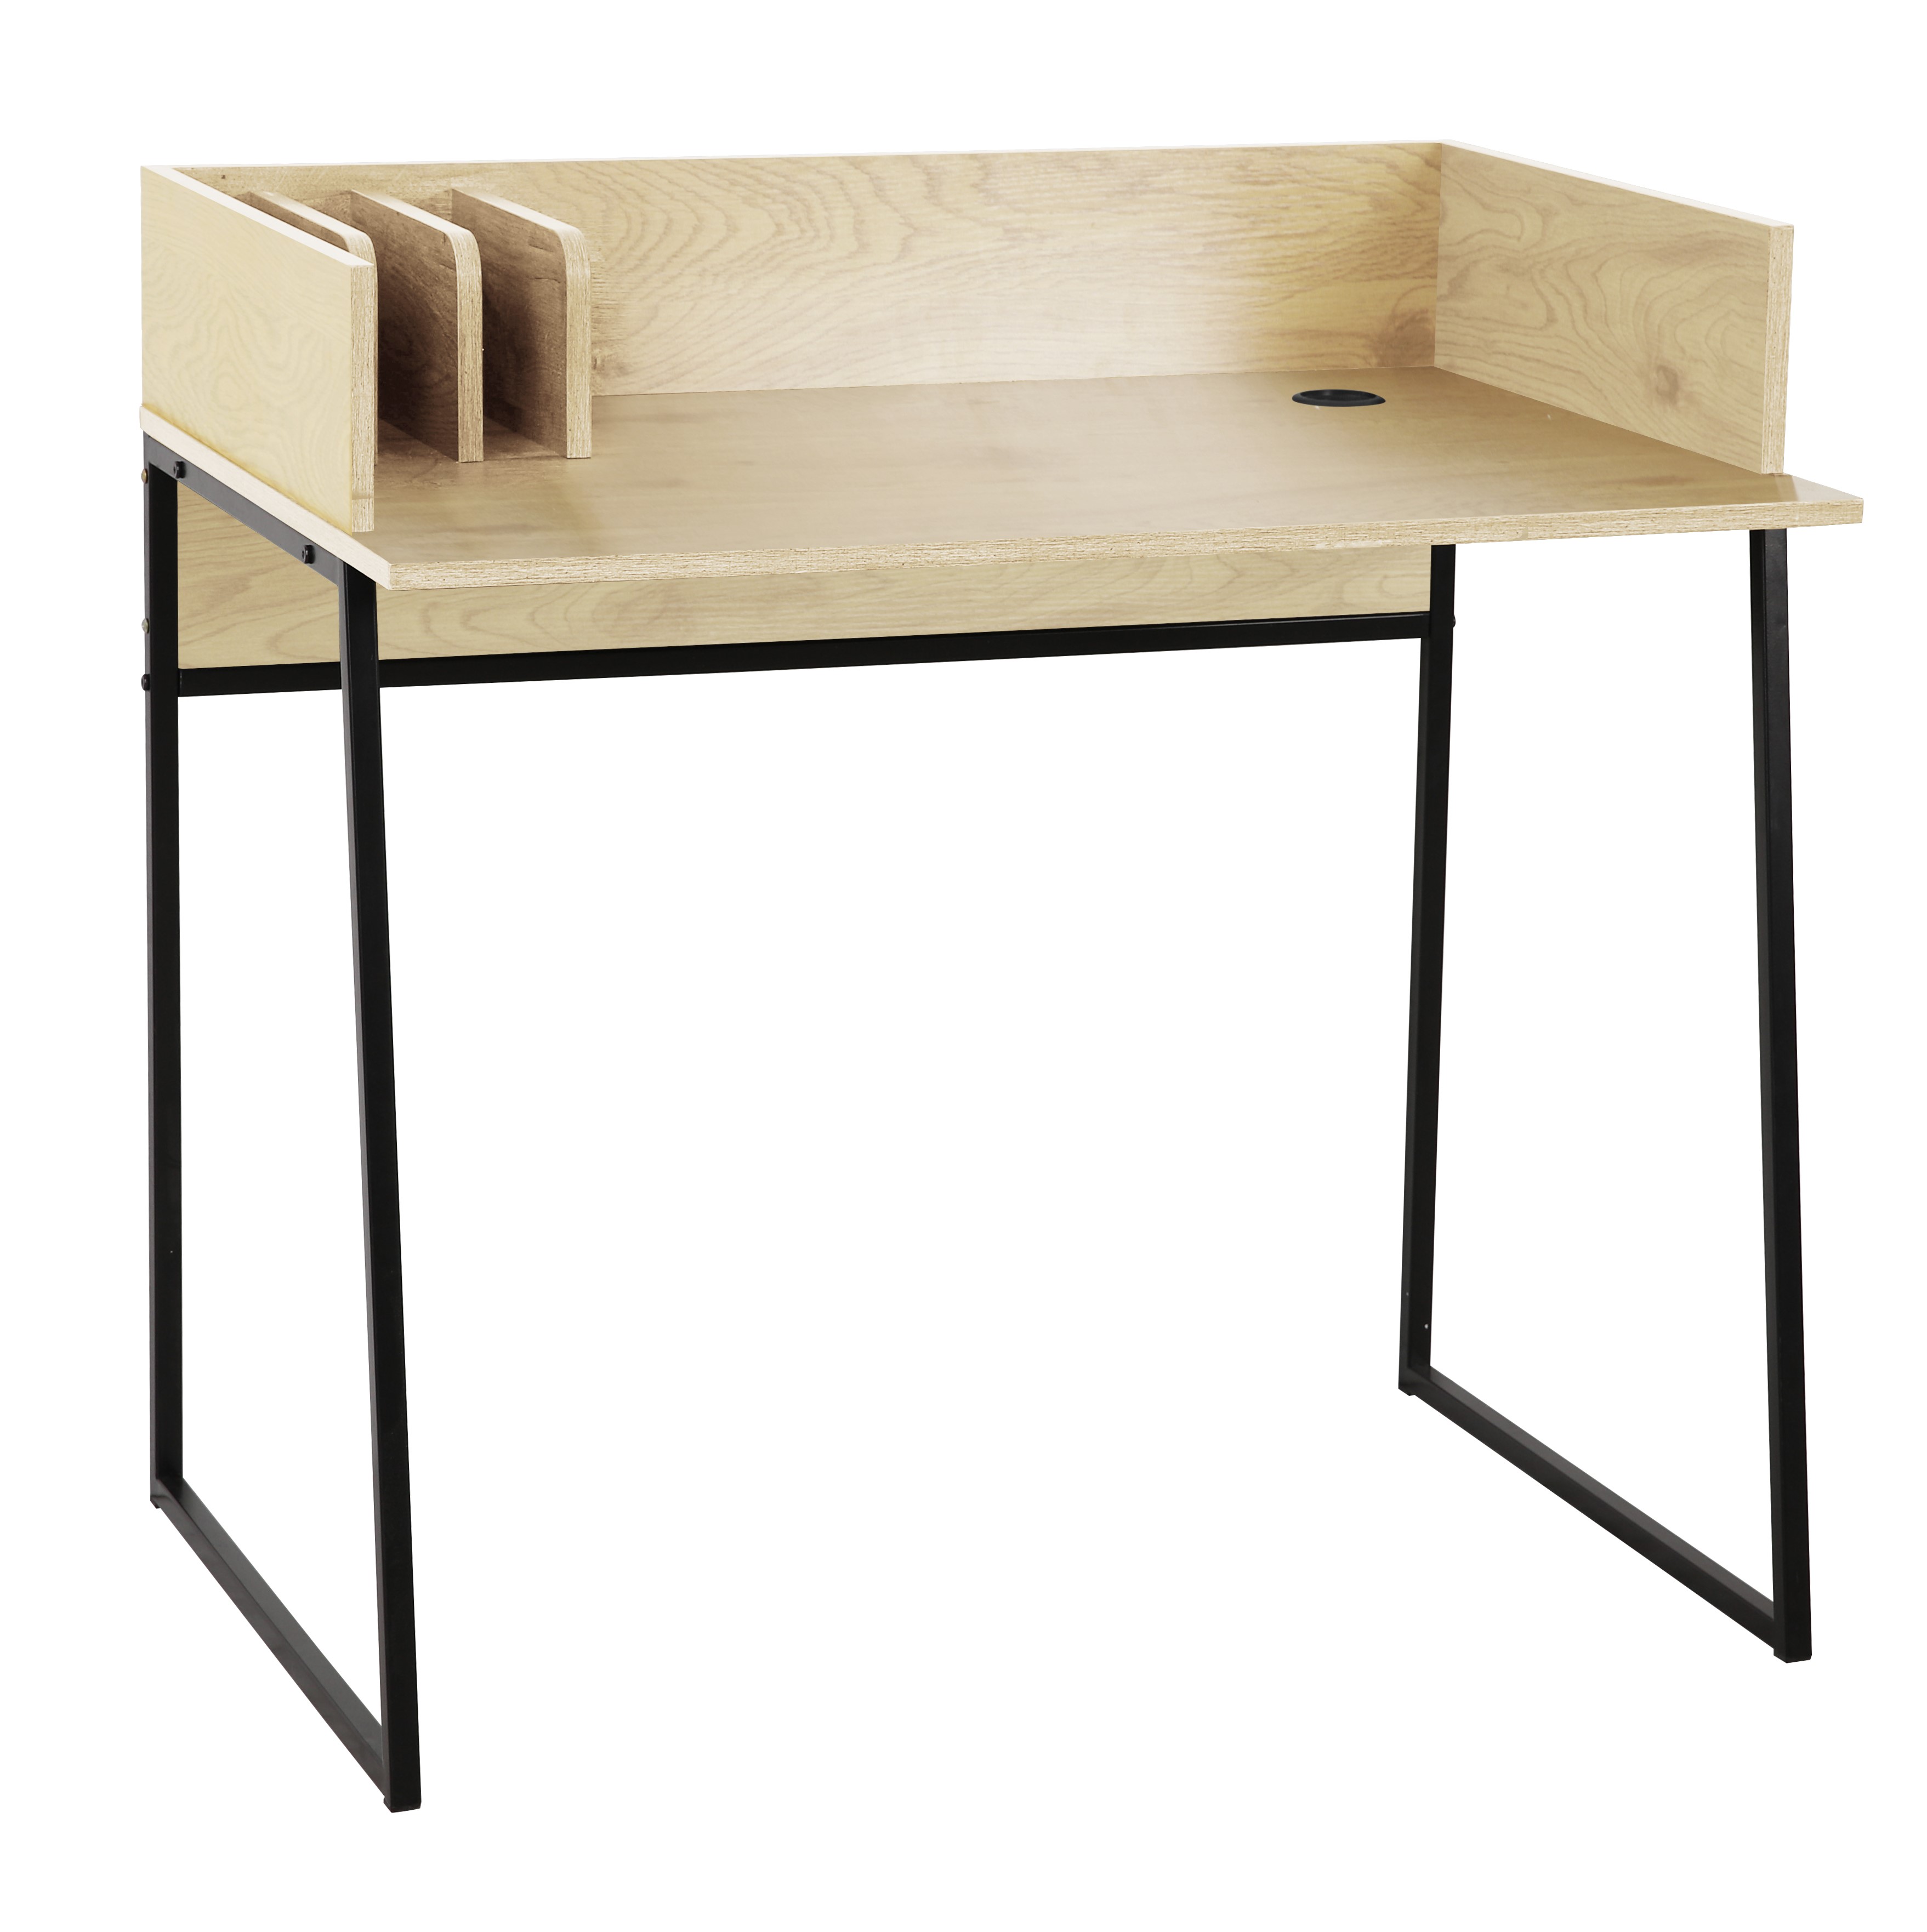 NORDLYS Benton skrivbord, med förvaring - beige trä och svart metall